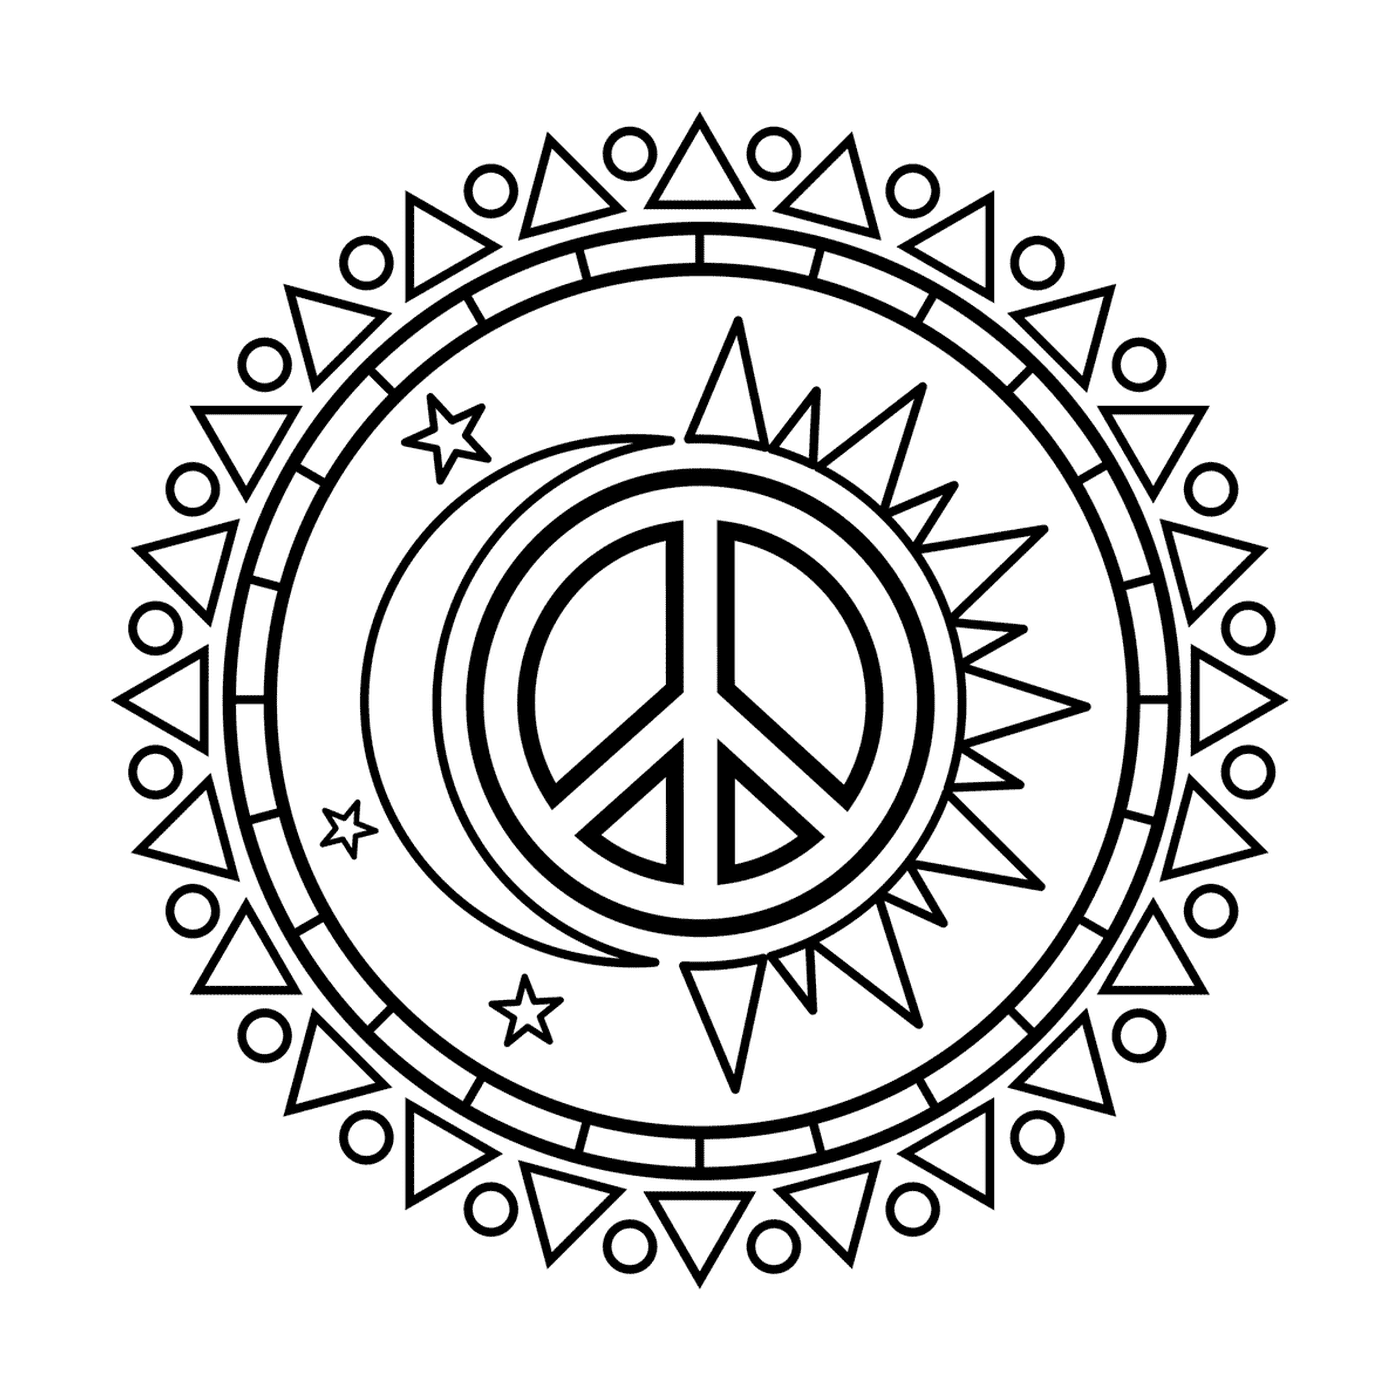  Sol e lua com símbolo de paz 